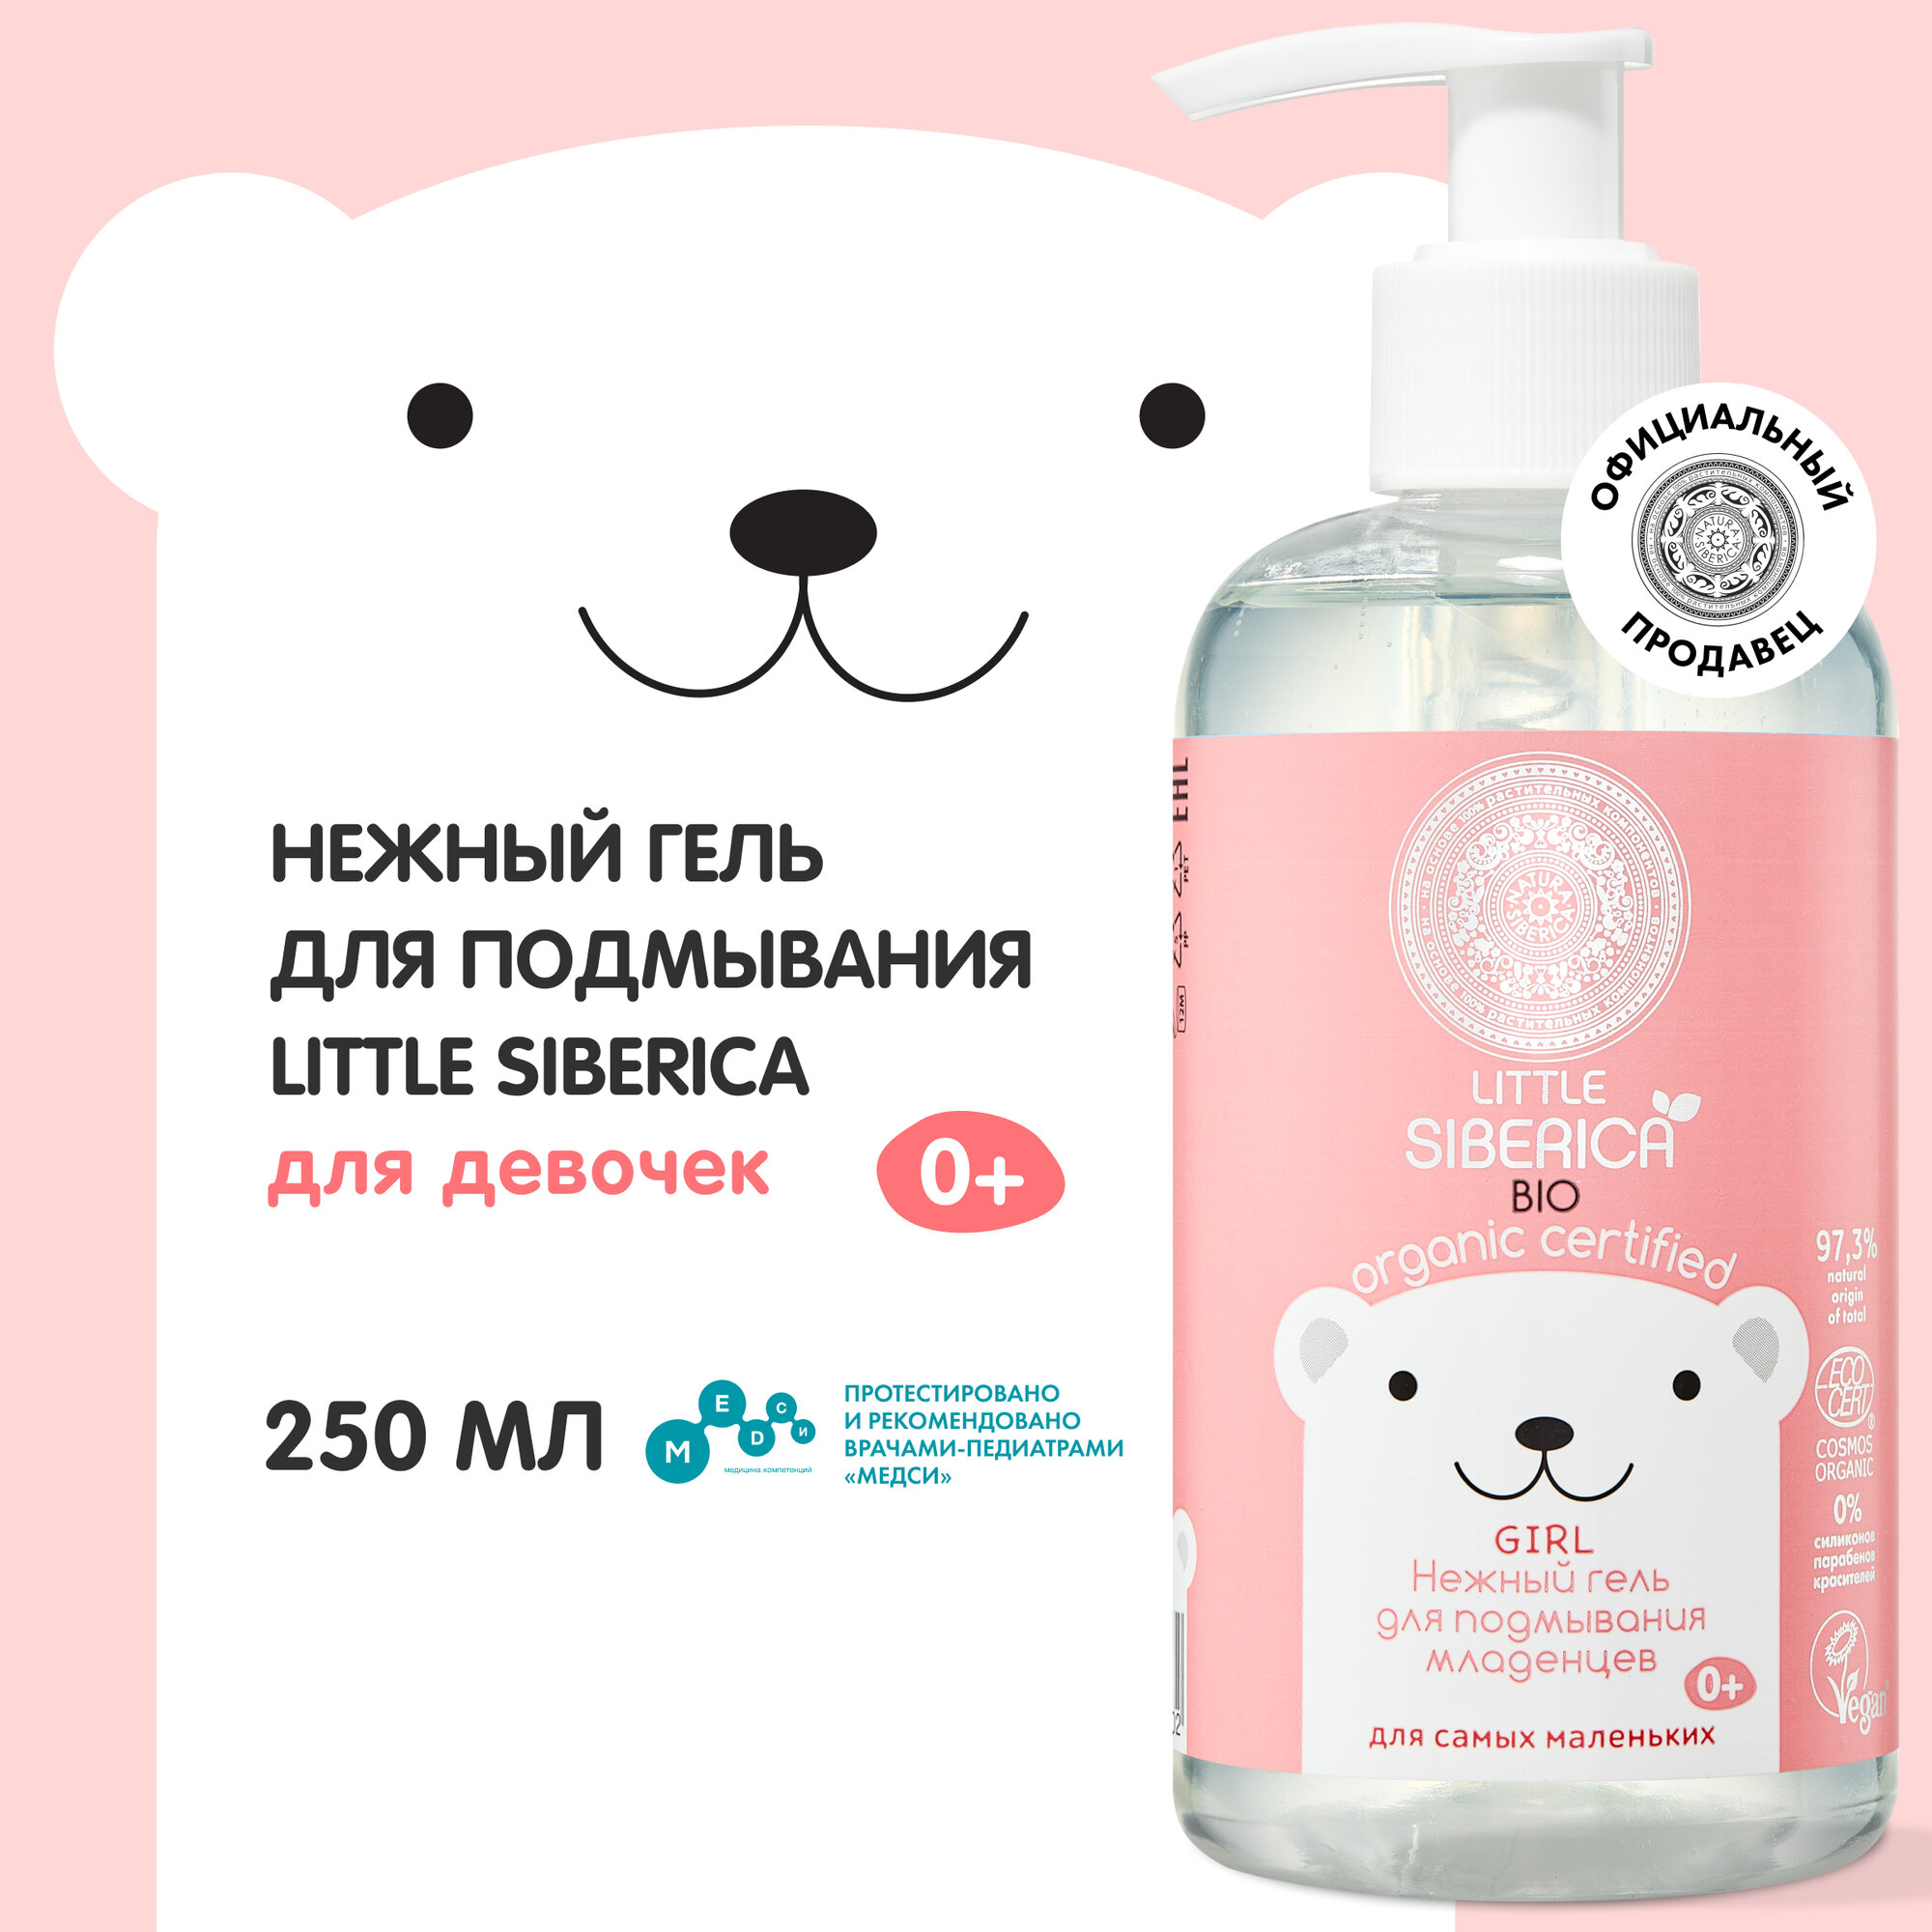 Нежный гель Natura Siberica Little Siberica 0+ для подмывания младенцев для девочек 250 мл